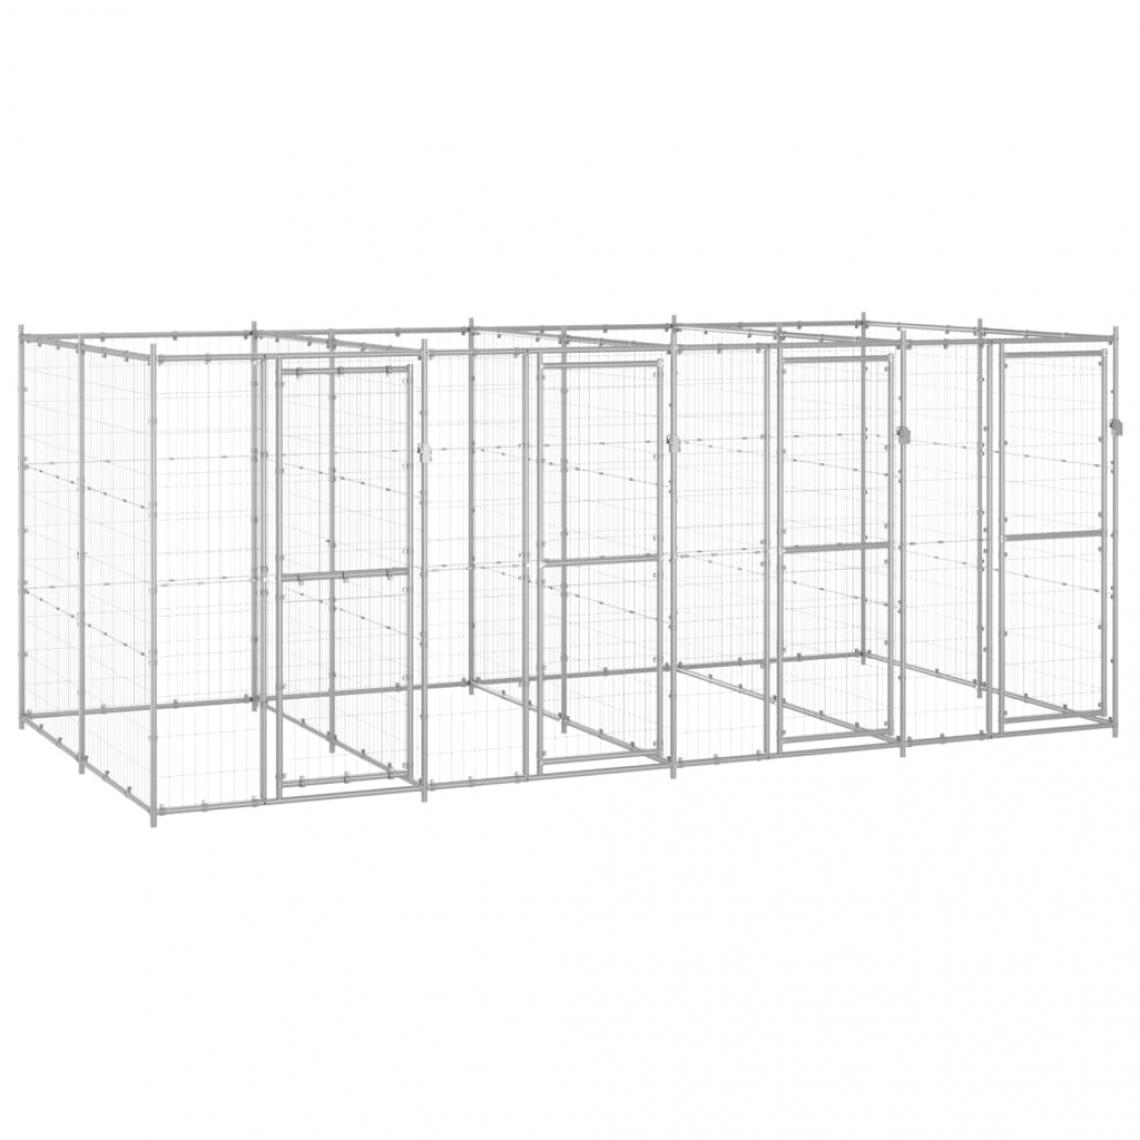 Helloshop26 - Chenil extérieur cage enclos parc animaux chien extérieur acier galvanisé 9,68 m² 02_0000430 - Clôture pour chien